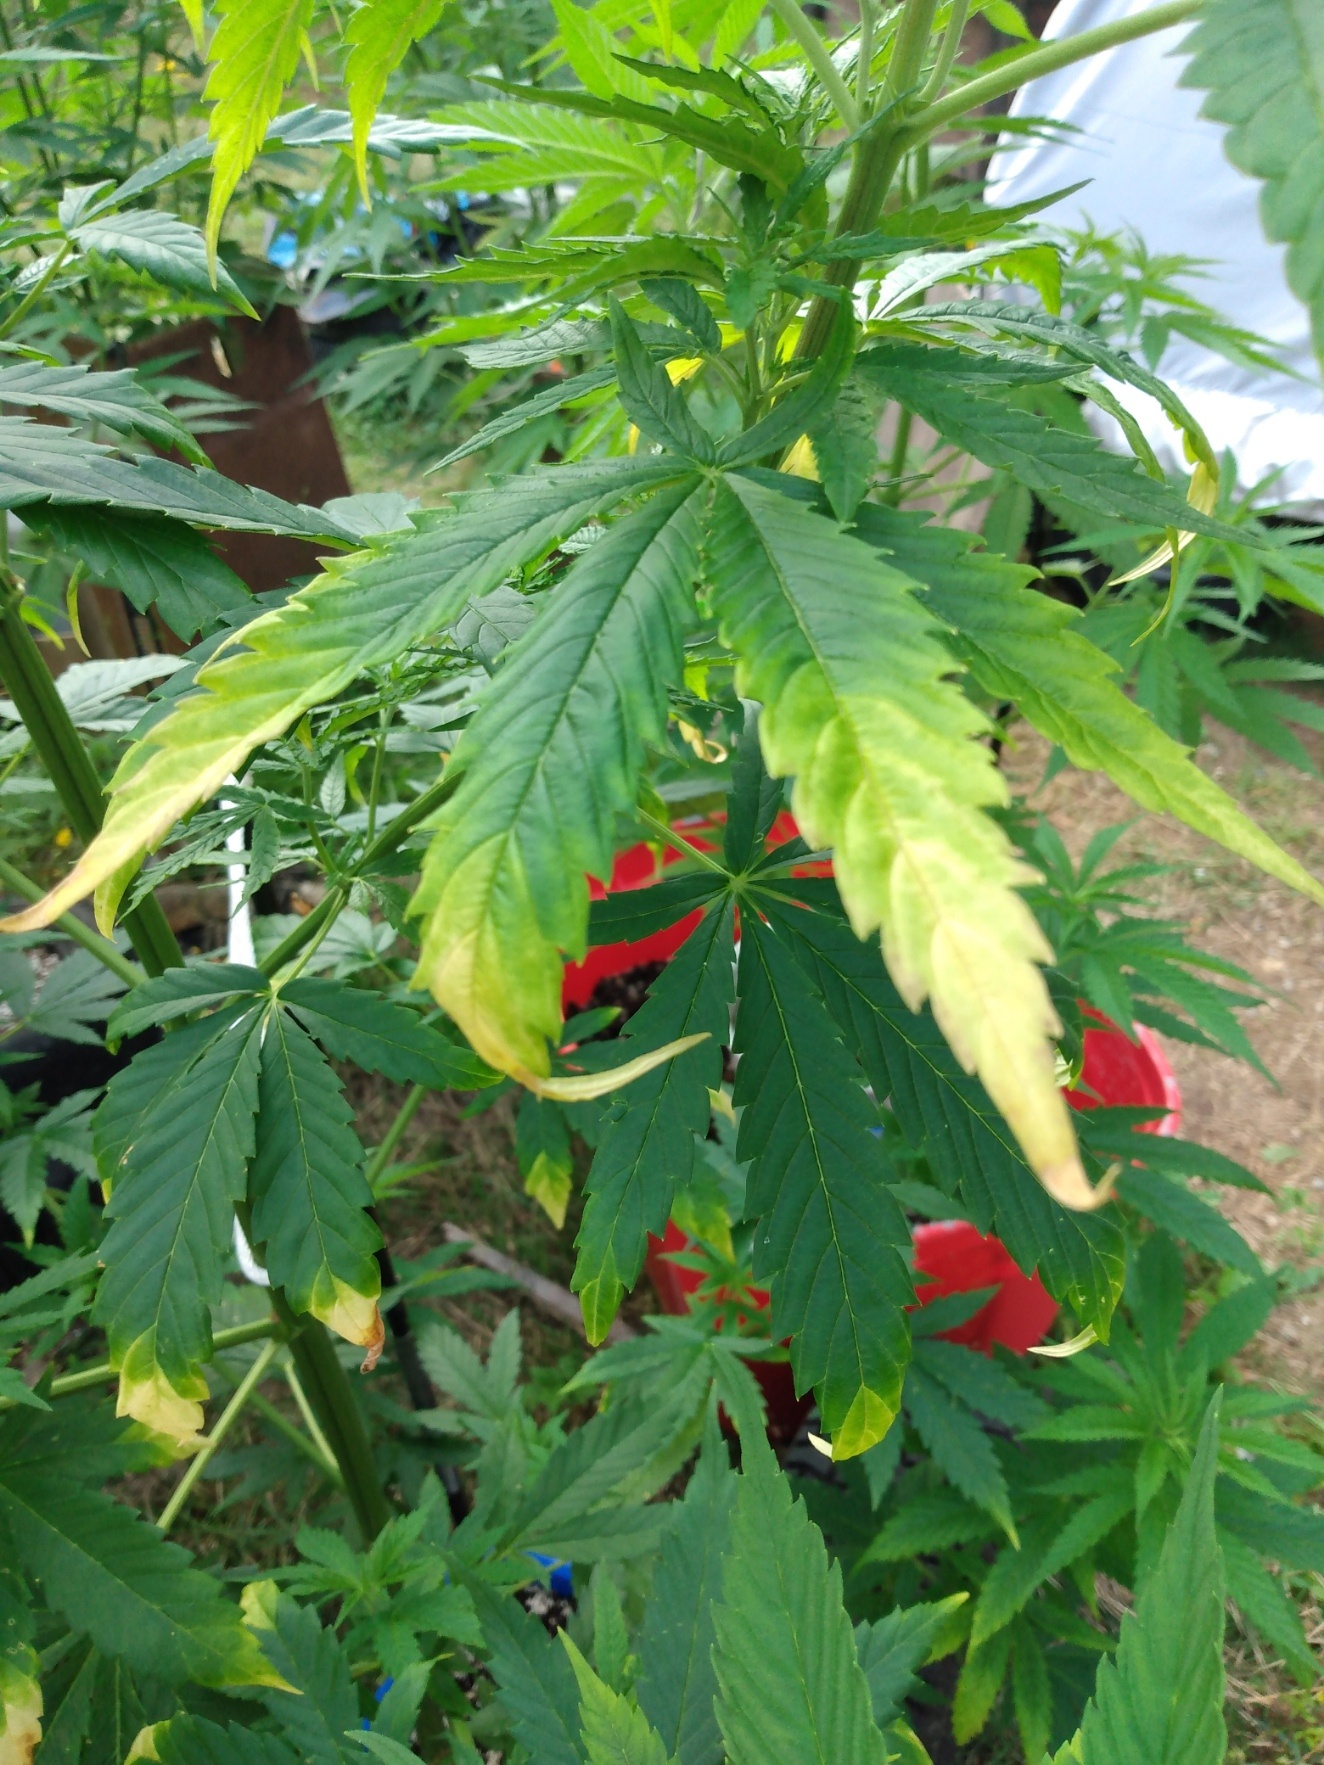 Cannabis leaf symptoms on my plants 5